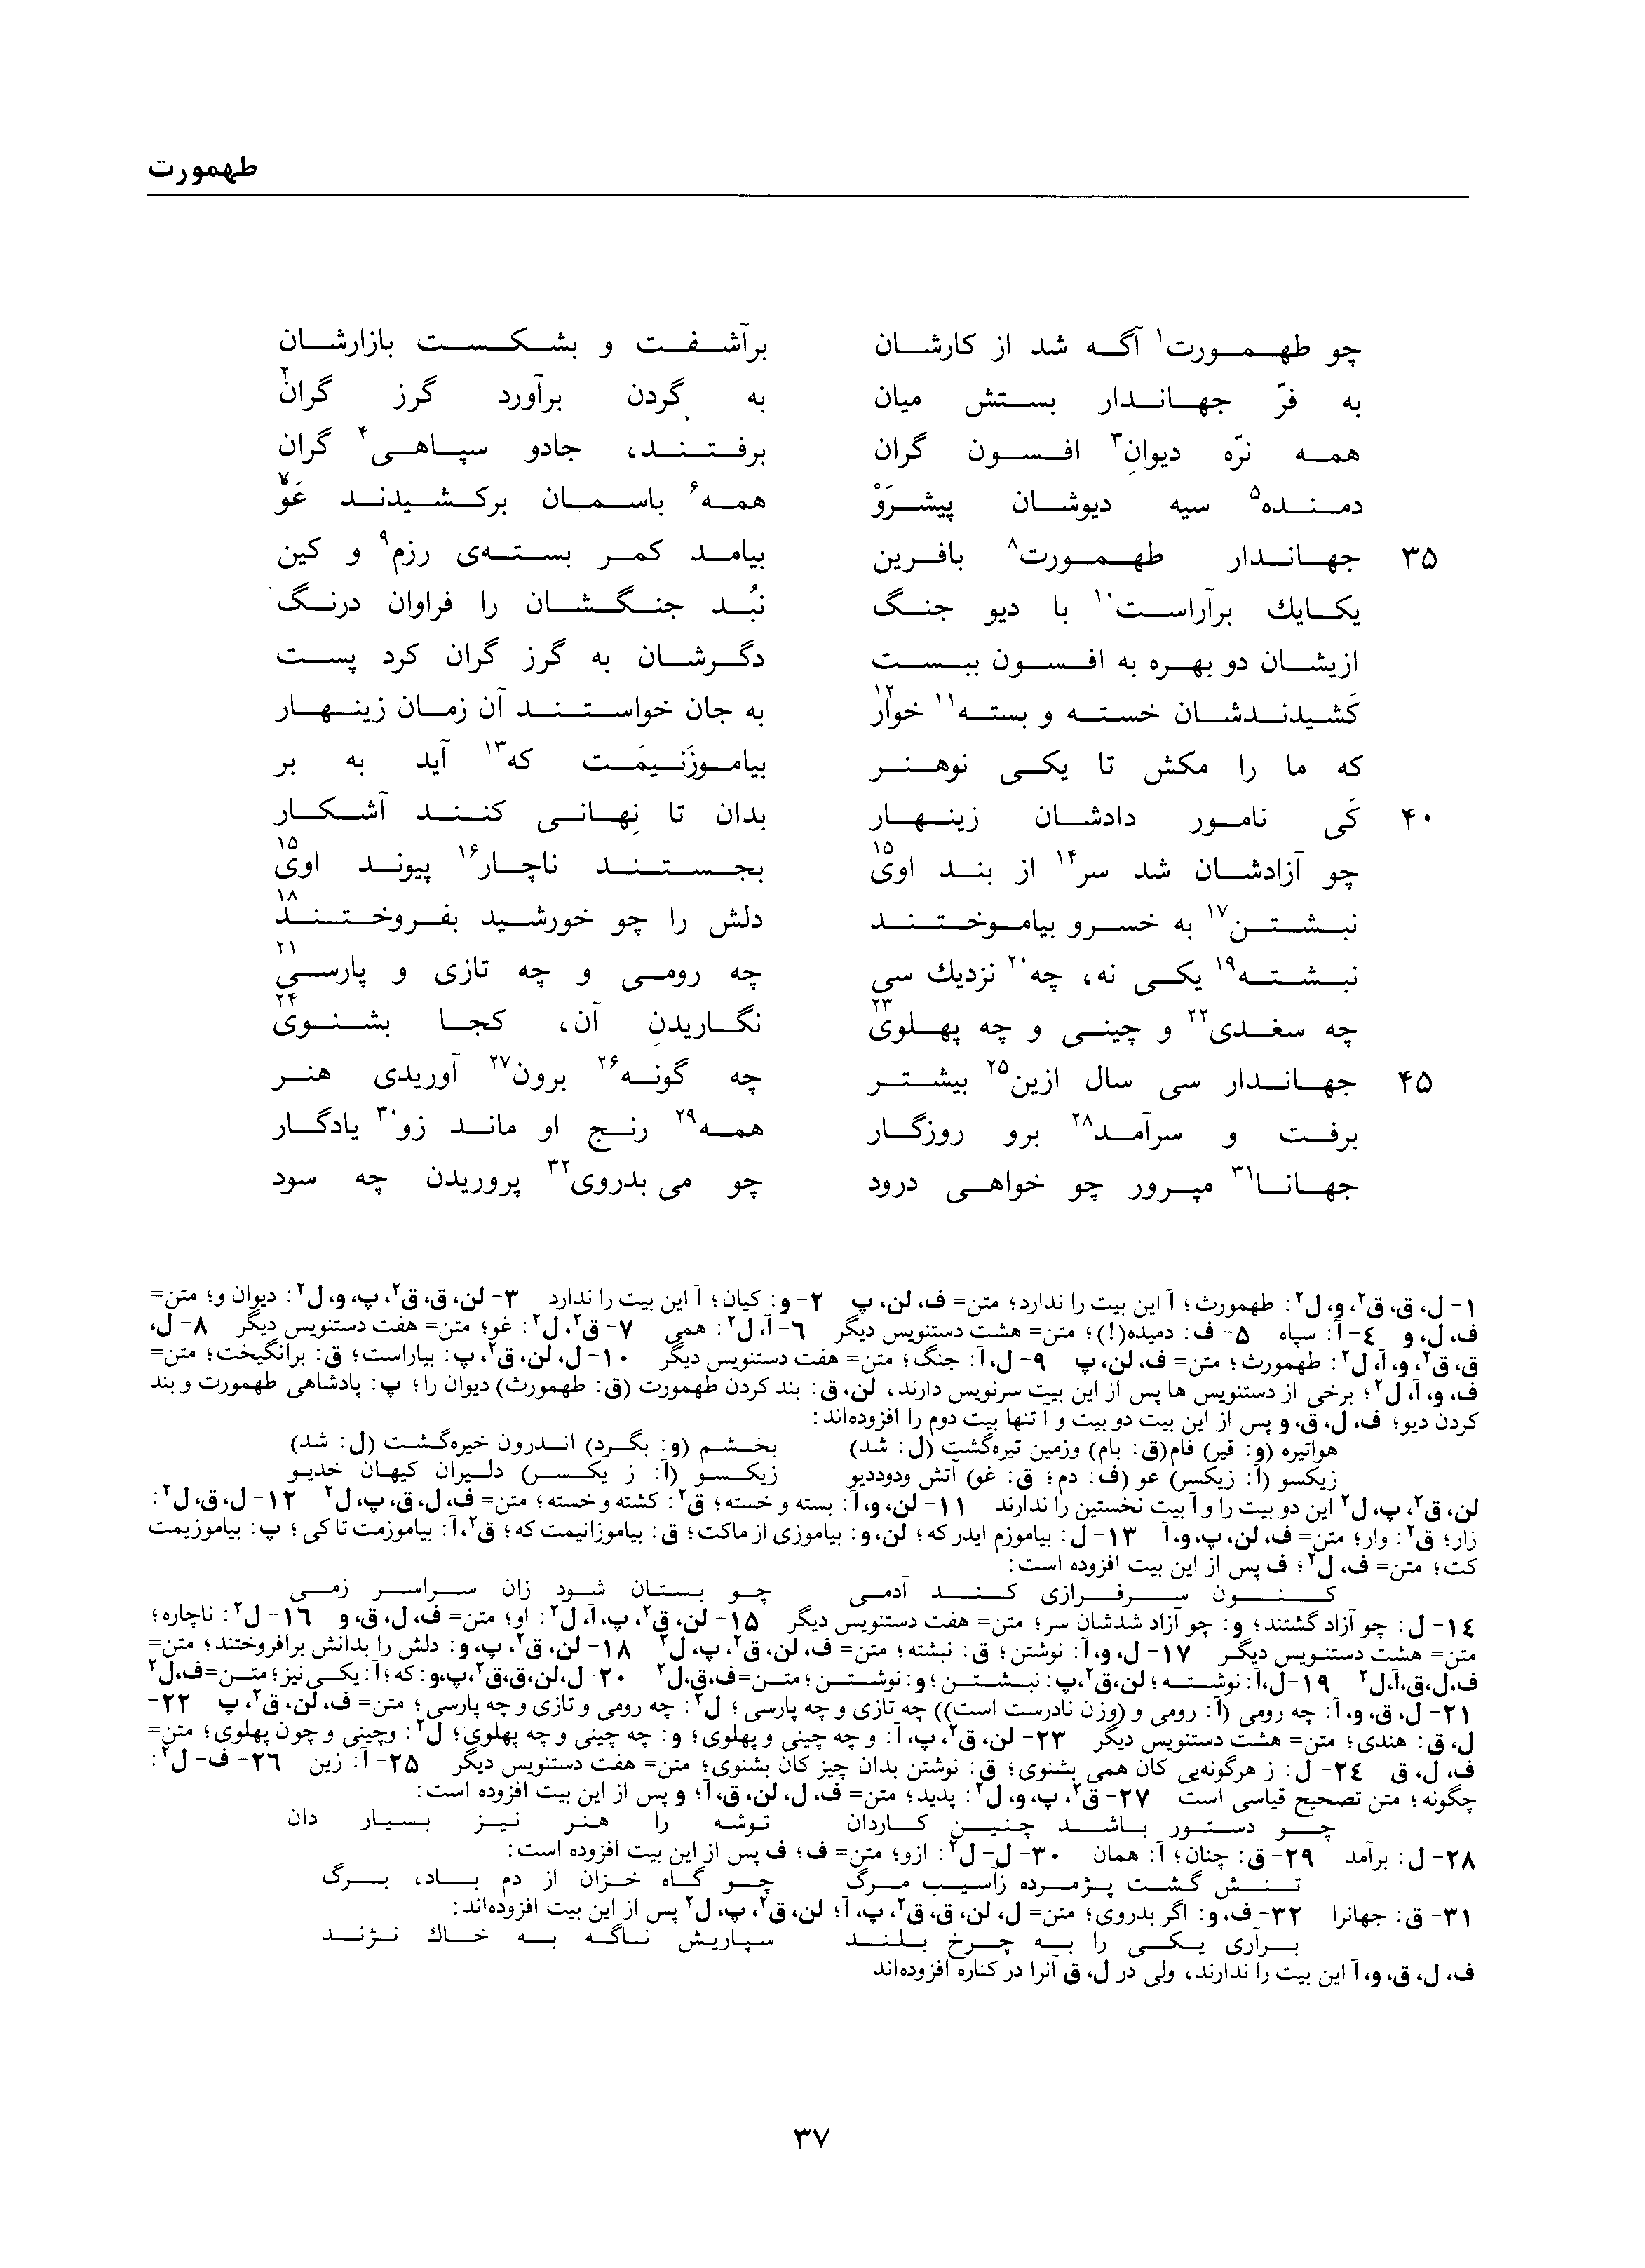 vol. 1, p. 37